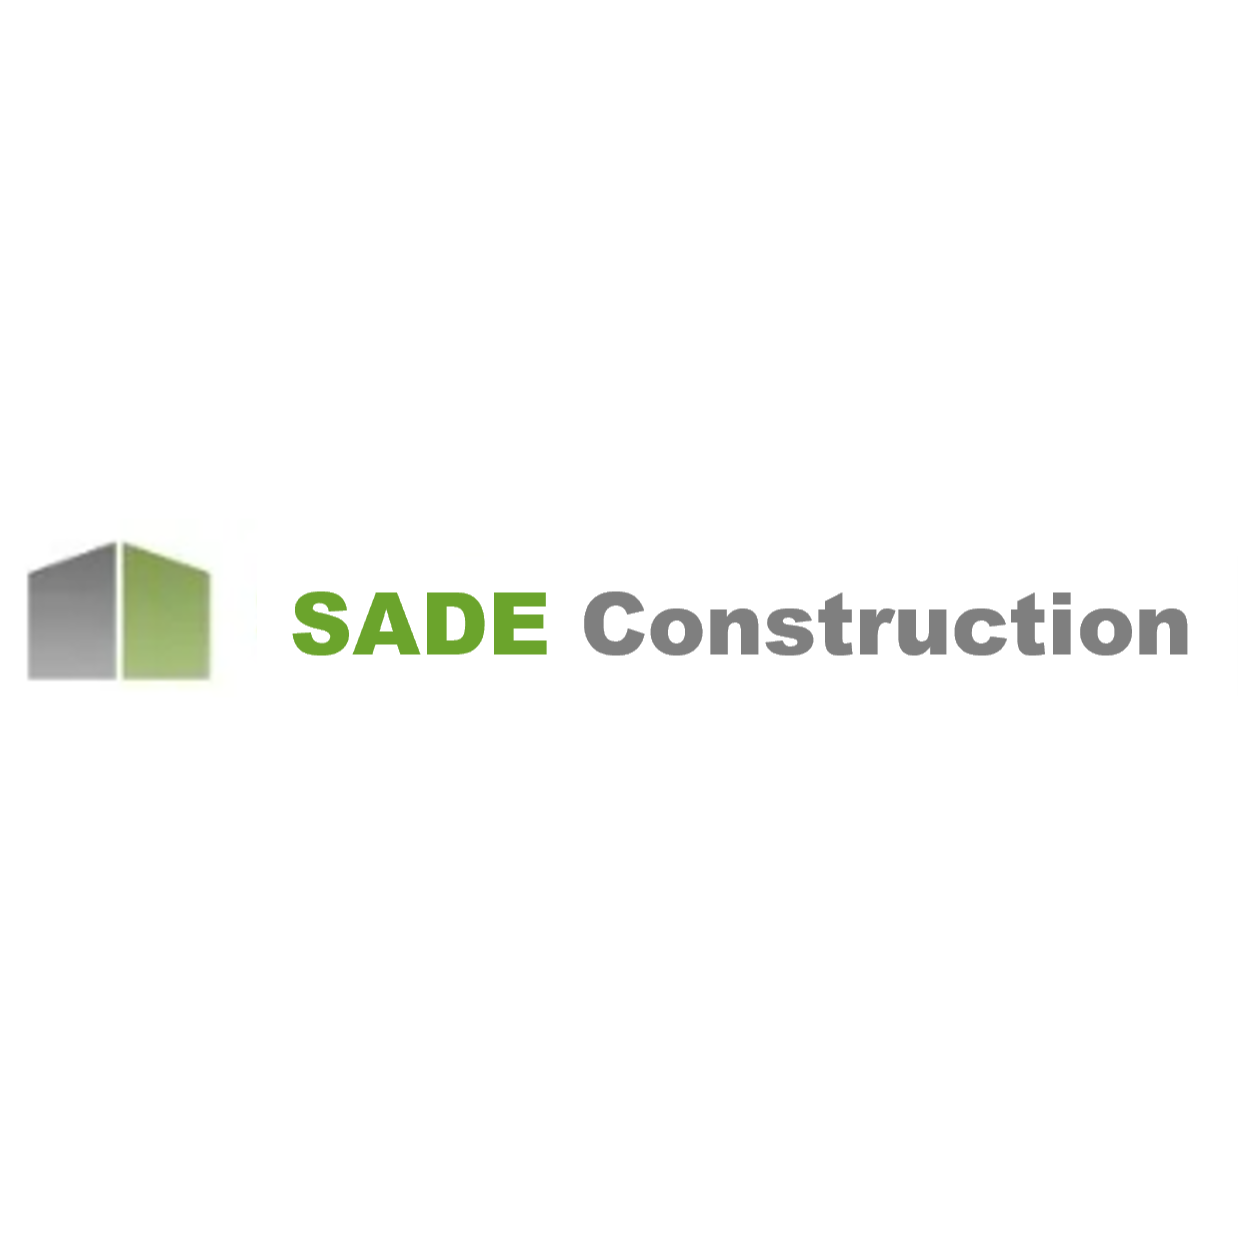 SADE Construction - Lake Charles, LA 70605 - (337)438-8921 | ShowMeLocal.com